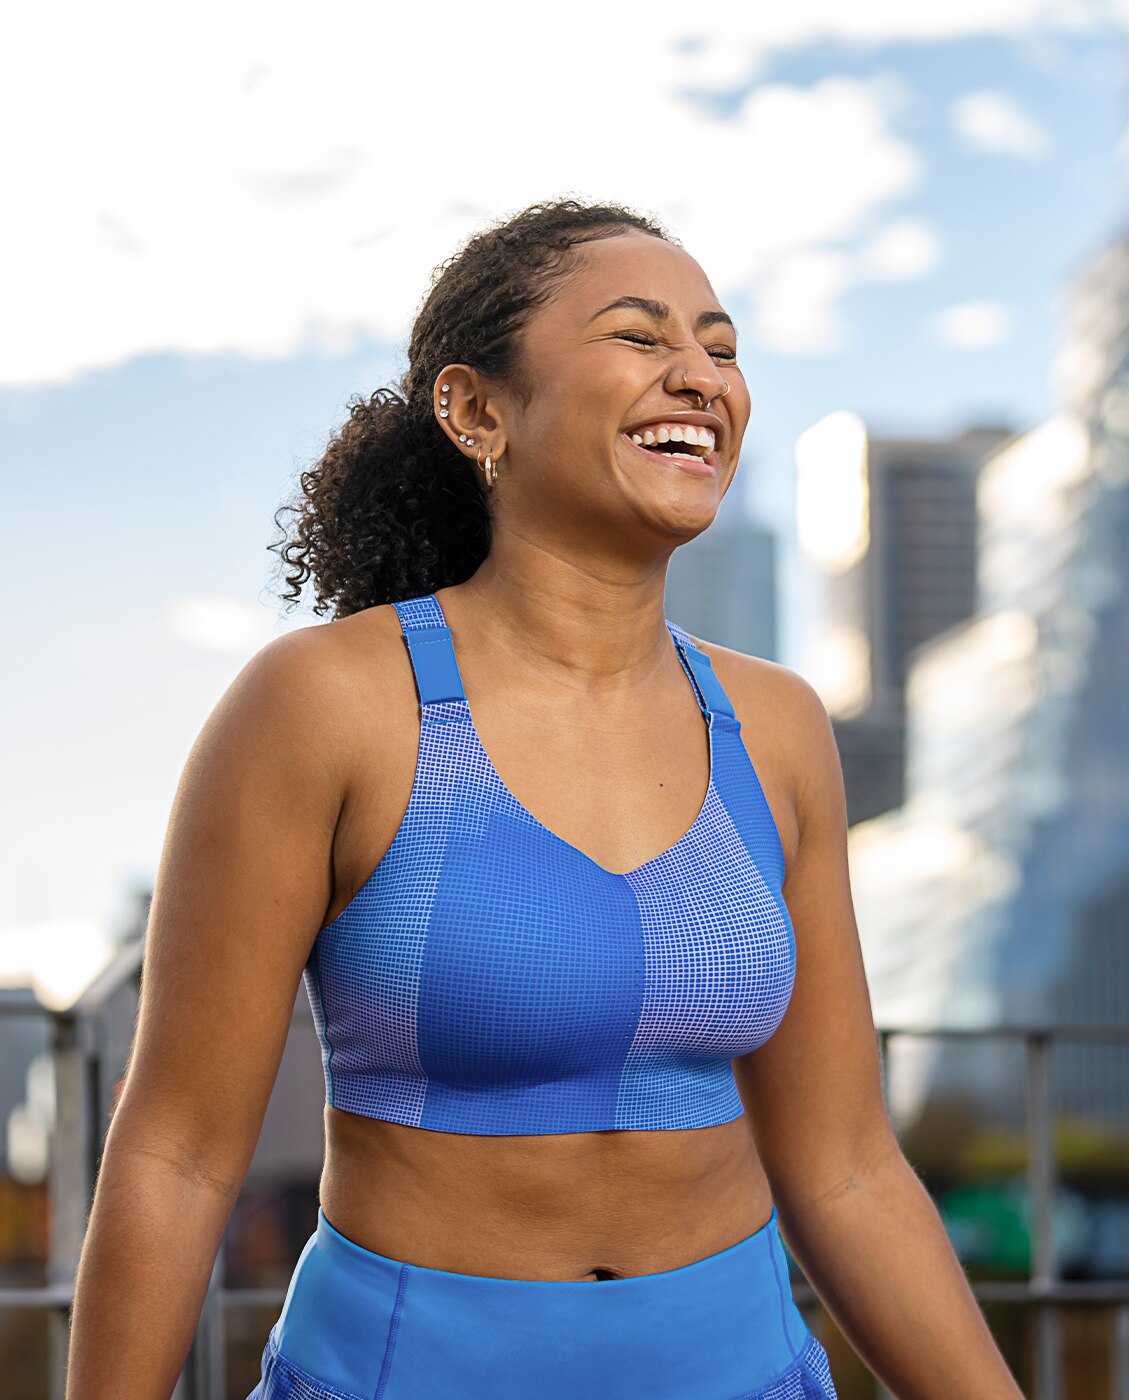 Une femme souriante dans la rue, portant une brassière de running Brooks bleue